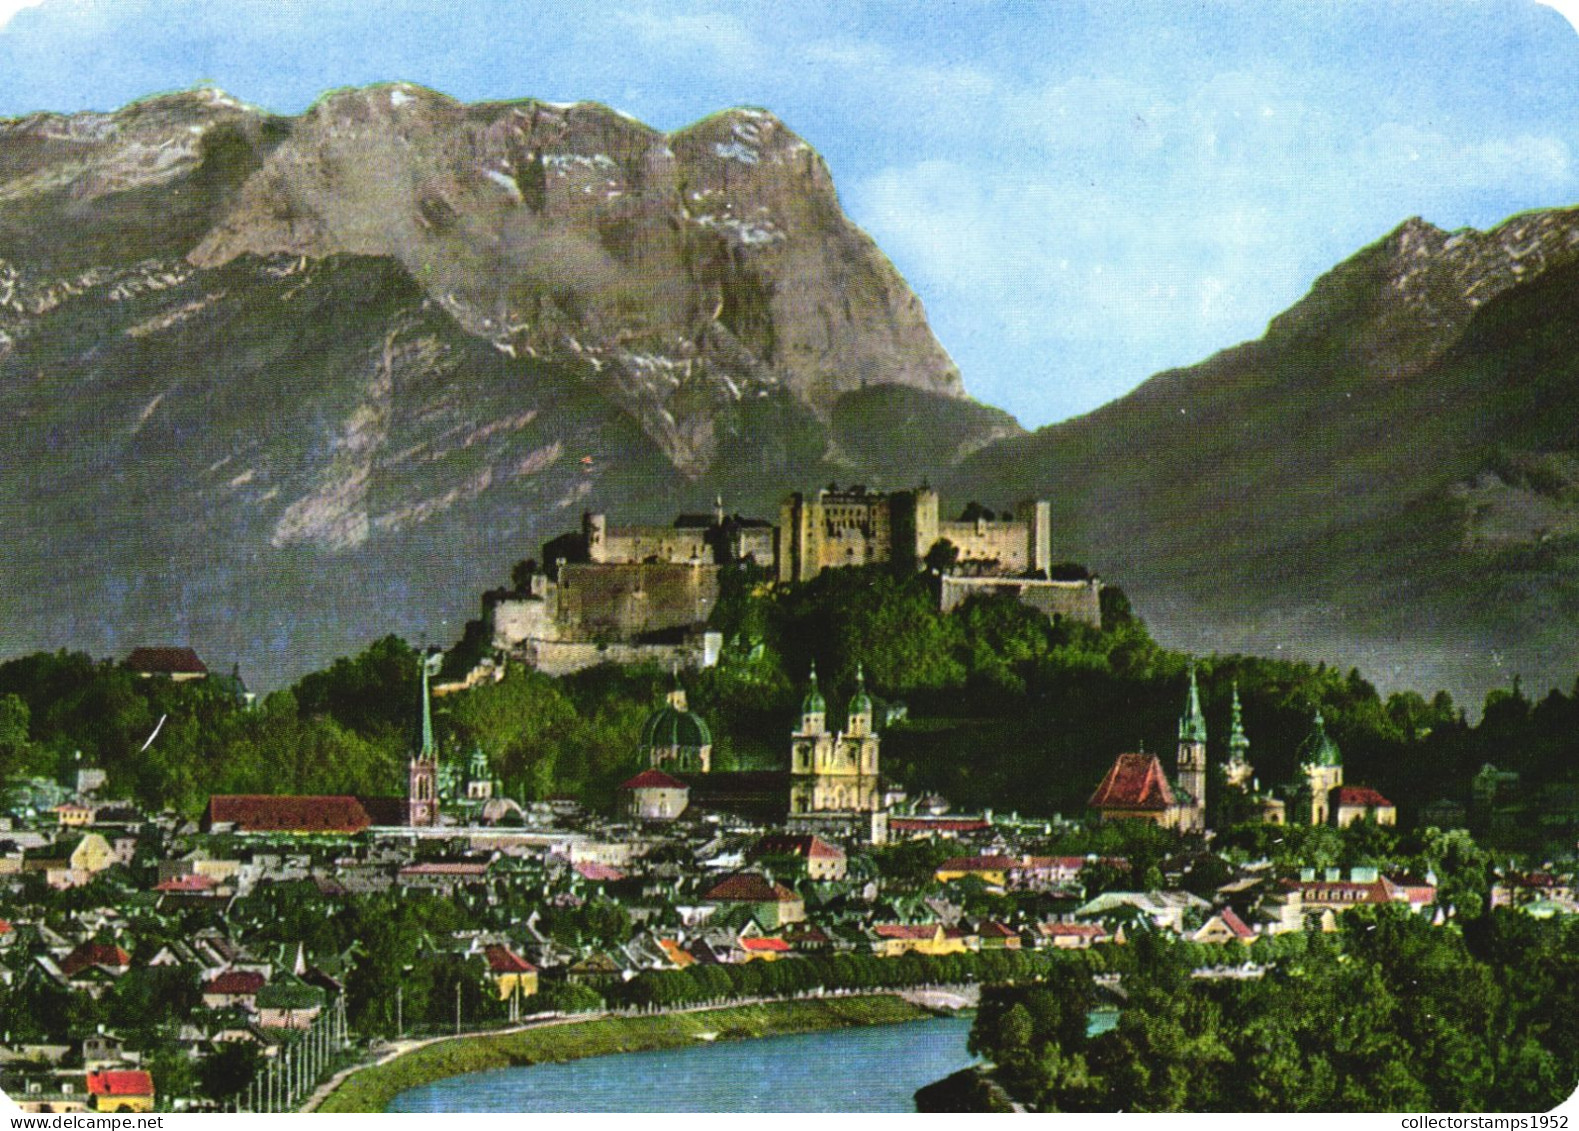 SALZBURG, CASTLE, ARCHITECTURE, MOUNTAIN, CHURCH, TOWER, AUSTRIA, POSTCARD - Salzburg Stadt